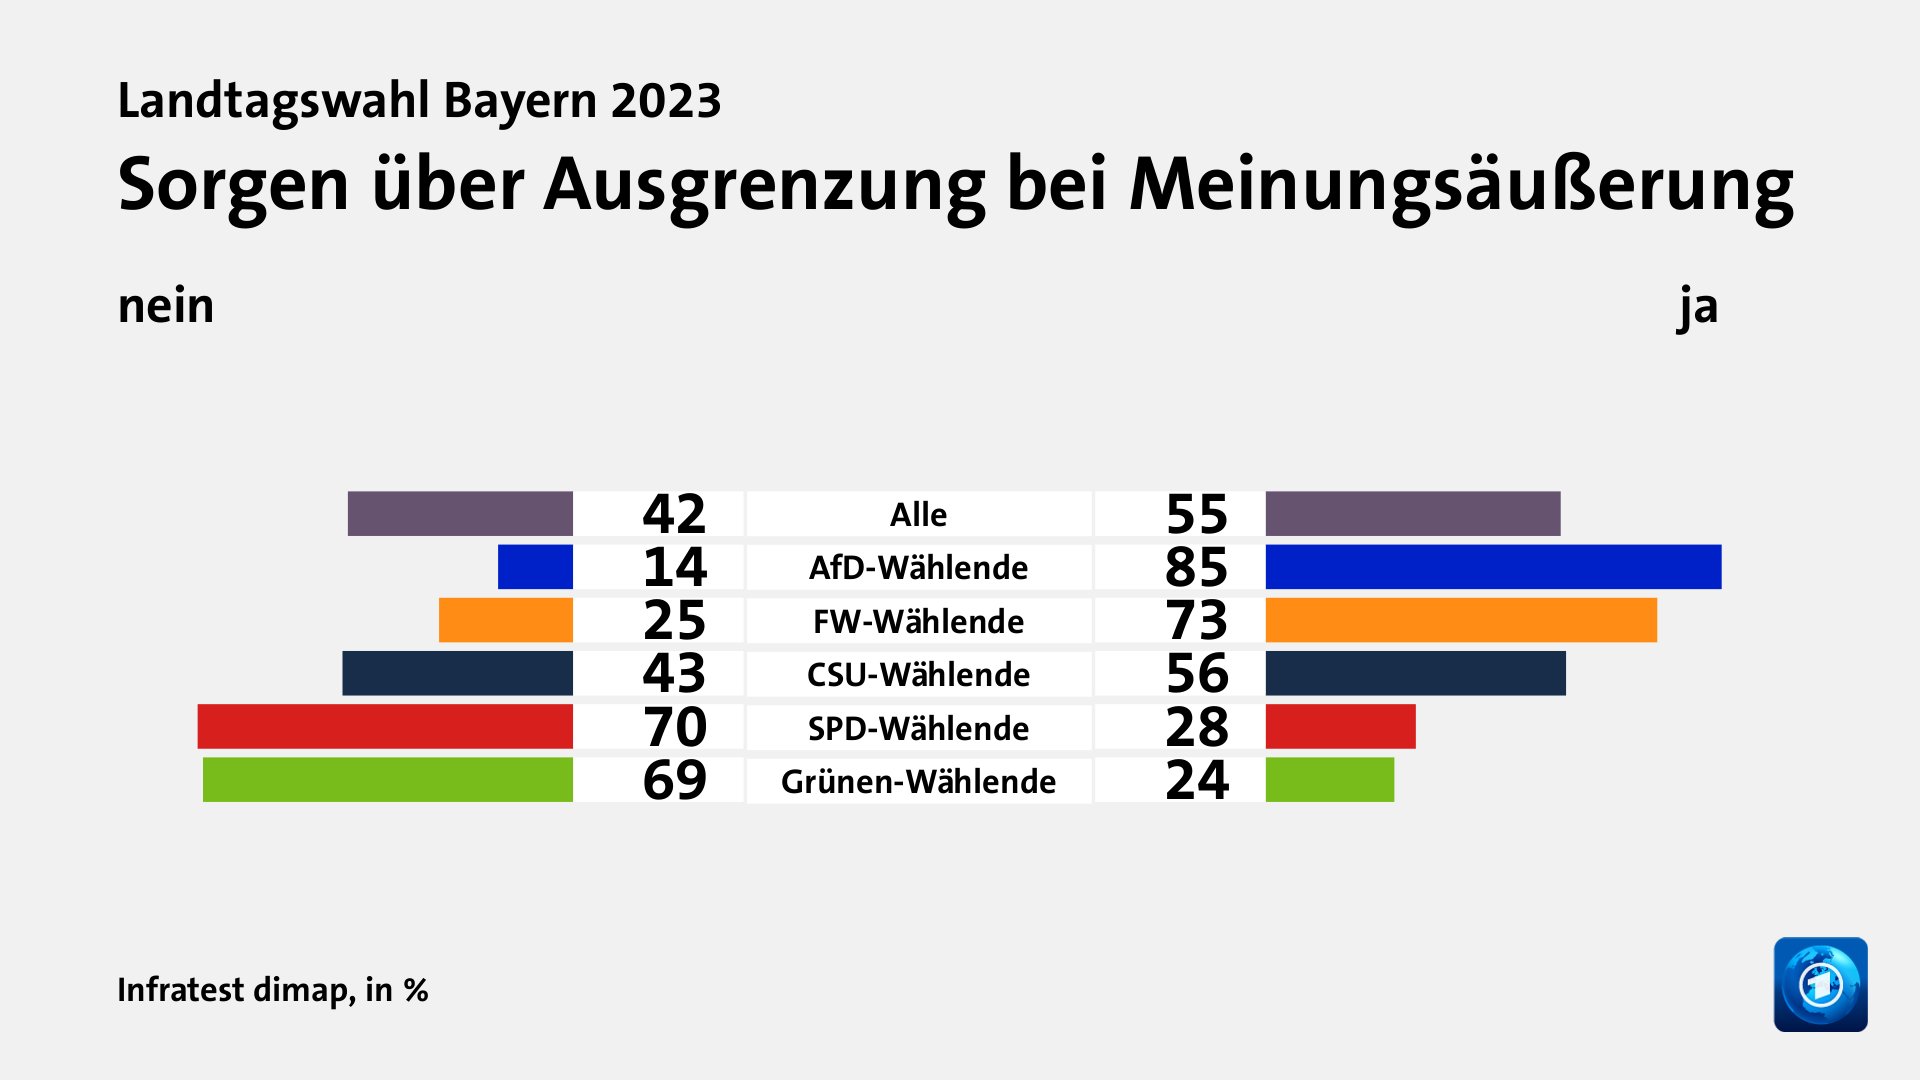 Sorgen über Ausgrenzung bei Meinungsäußerung (in %) Alle: nein 42, ja 55; AfD-Wählende: nein 14, ja 85; FW-Wählende: nein 25, ja 73; CSU-Wählende: nein 43, ja 56; SPD-Wählende: nein 70, ja 28; Grünen-Wählende: nein 69, ja 24; Quelle: Infratest dimap